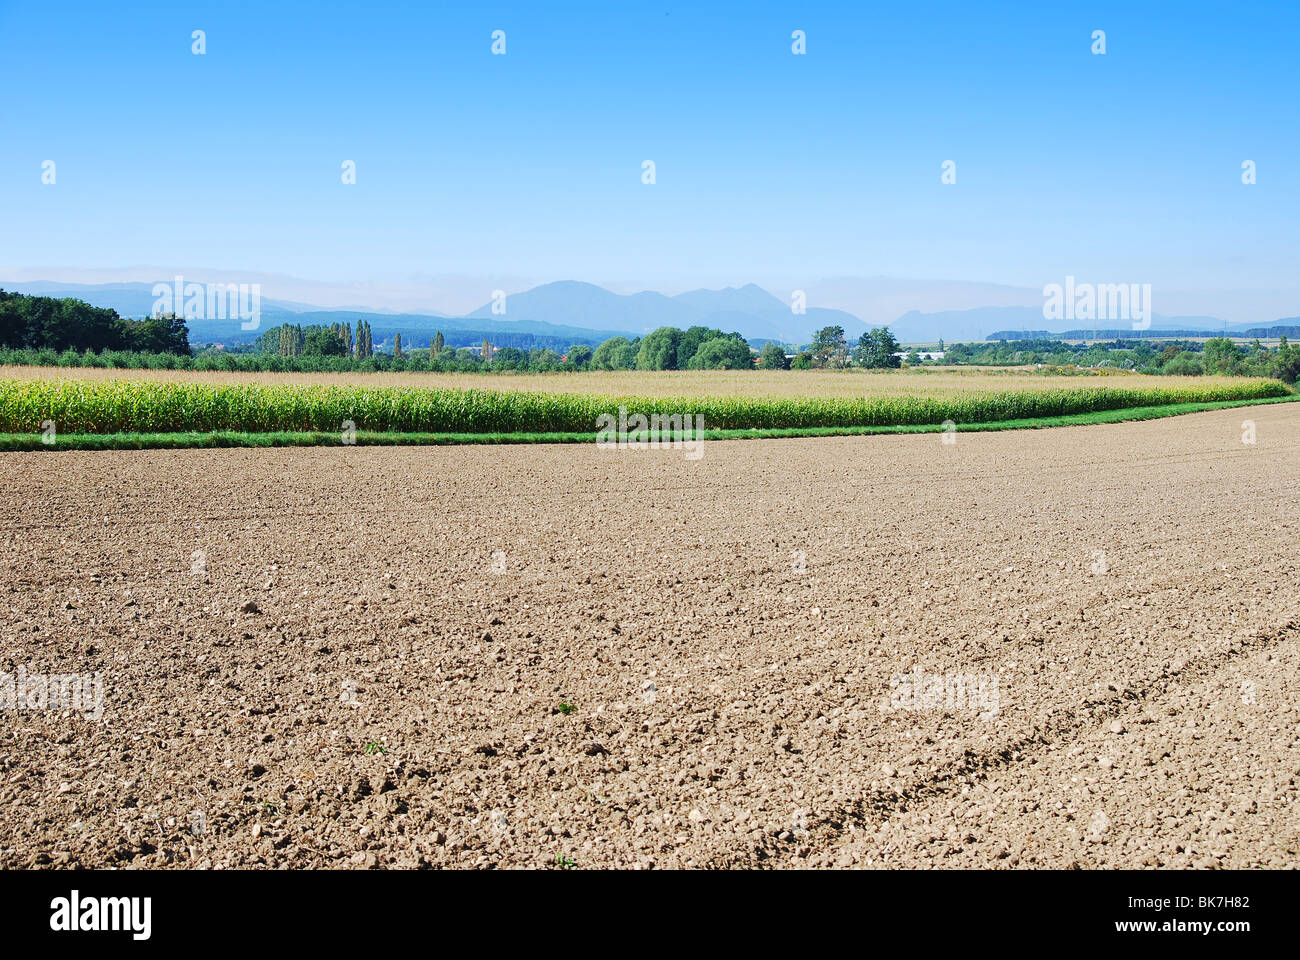 Farm field in Austria Alps Stock Photo